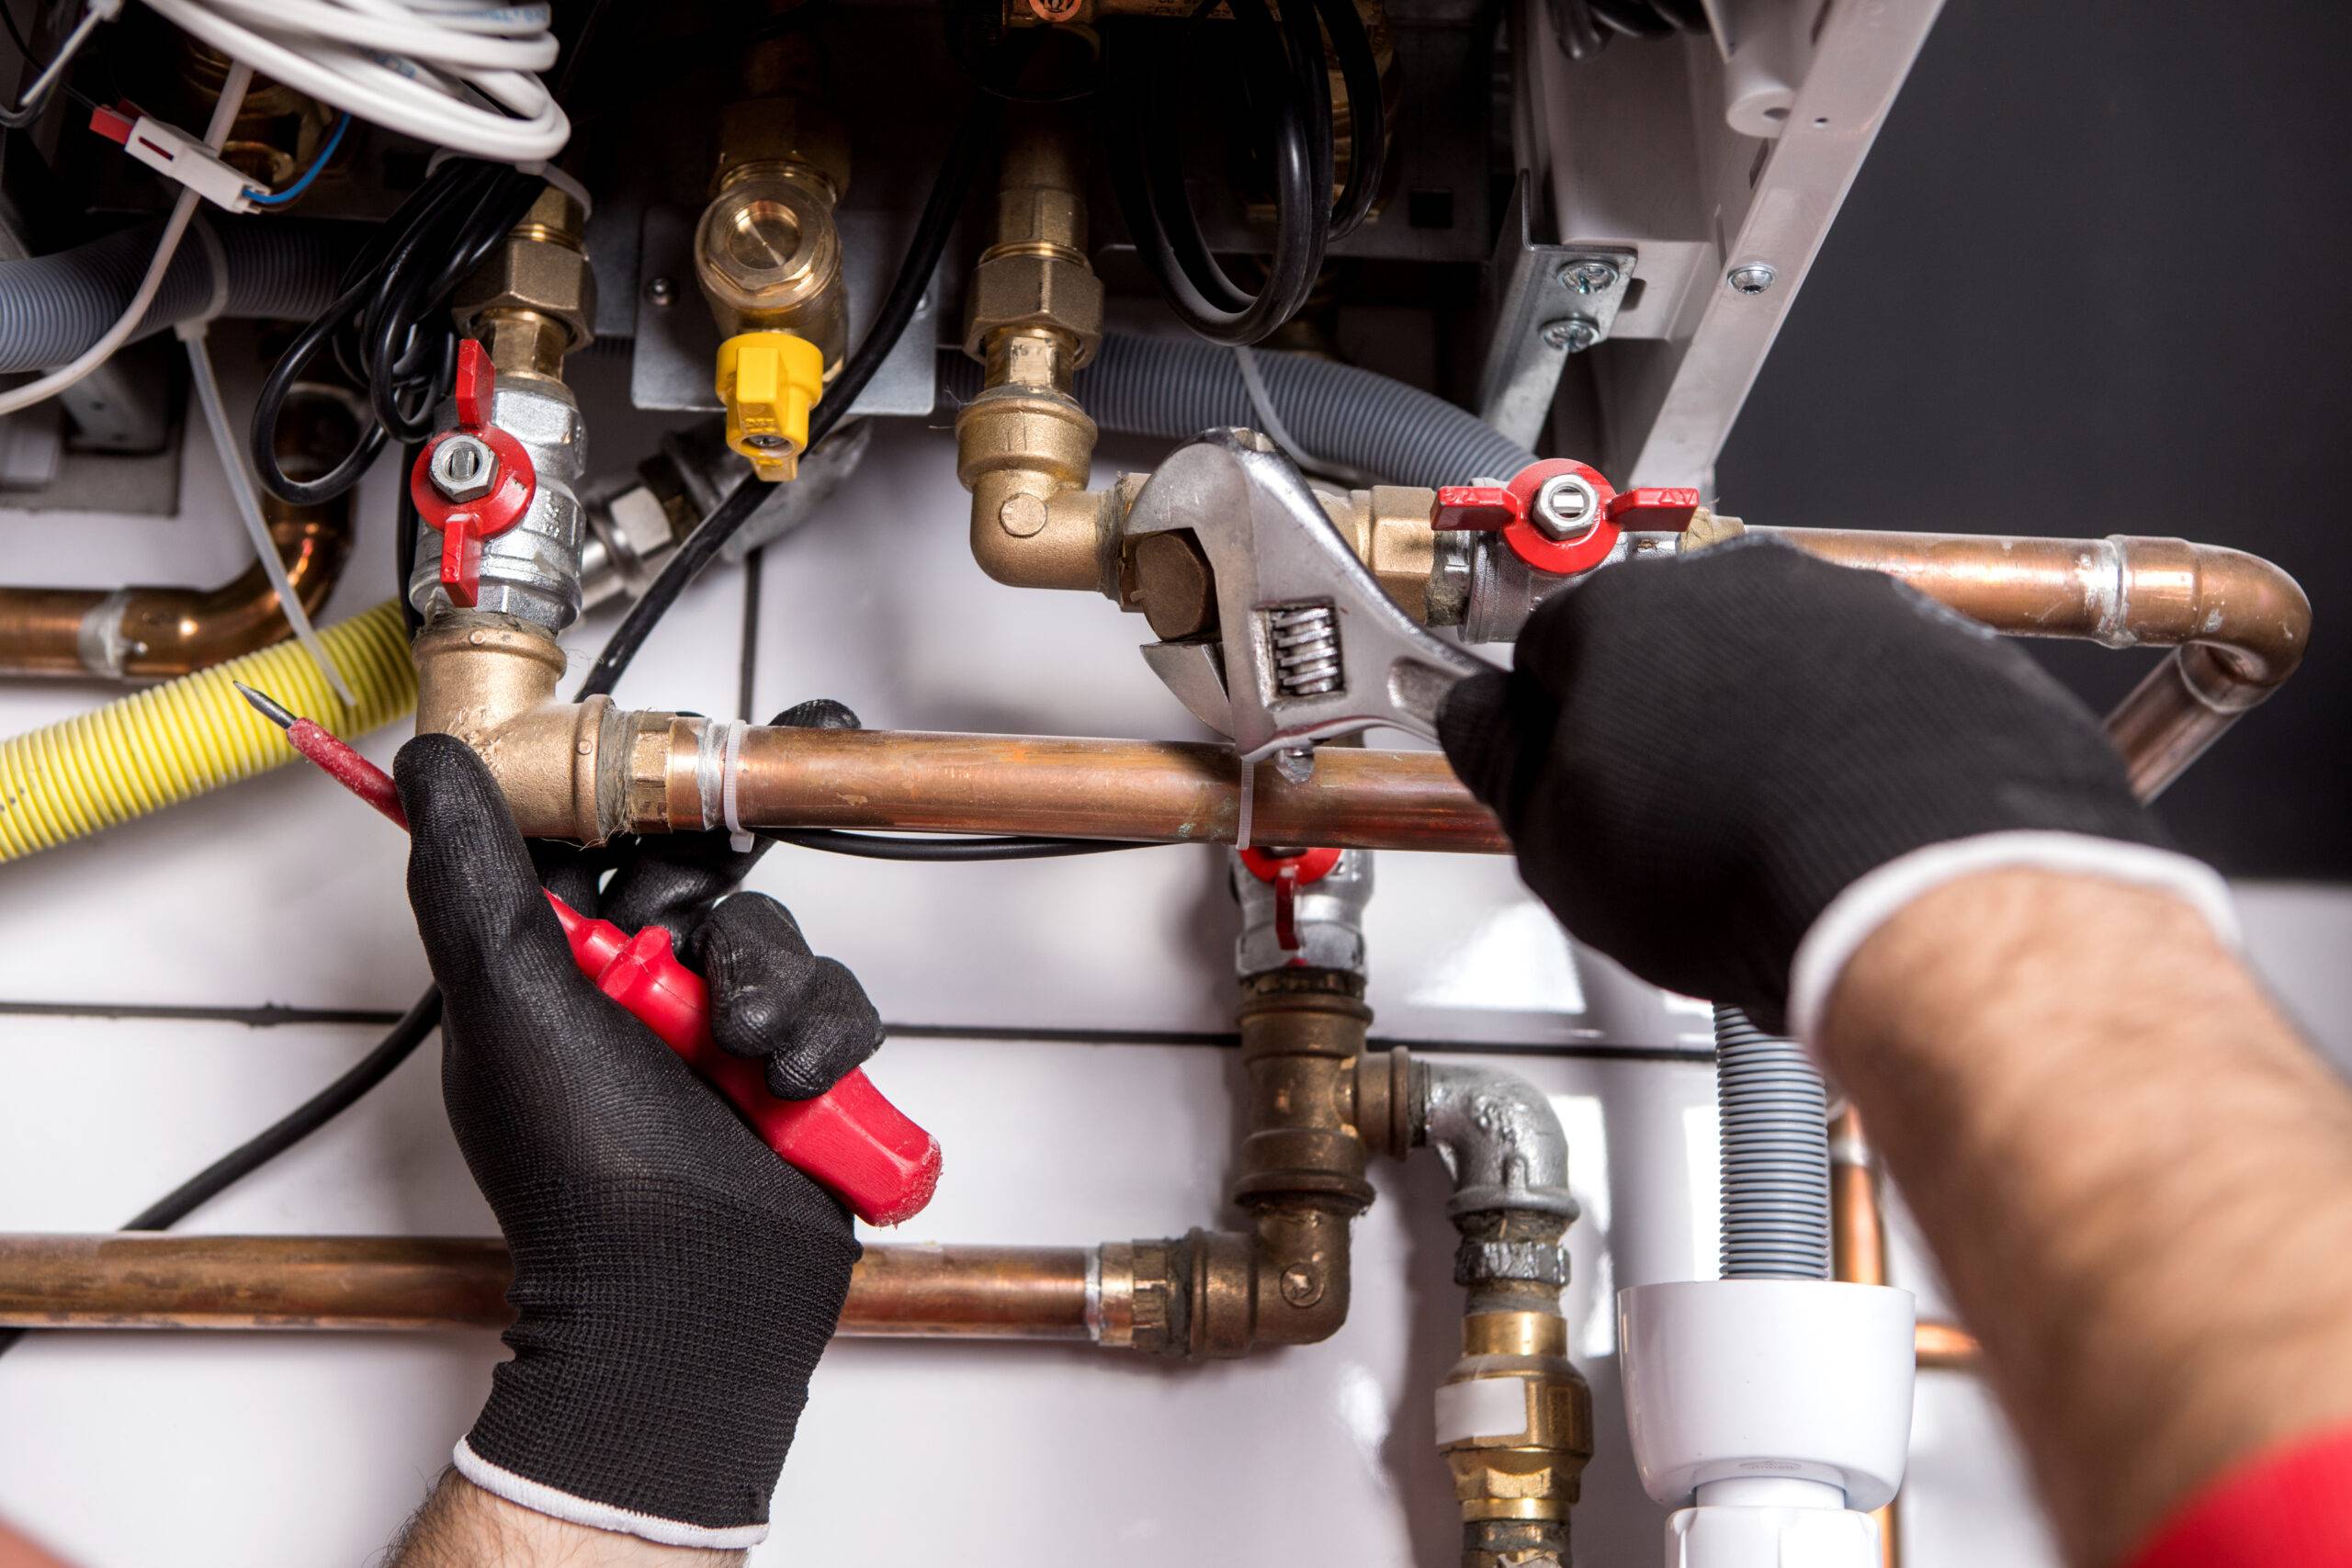 Installateur führt Wartung, Reparatur an einem Gasbrennwertgerät durch. Es sind nur die Hände sichtbar.